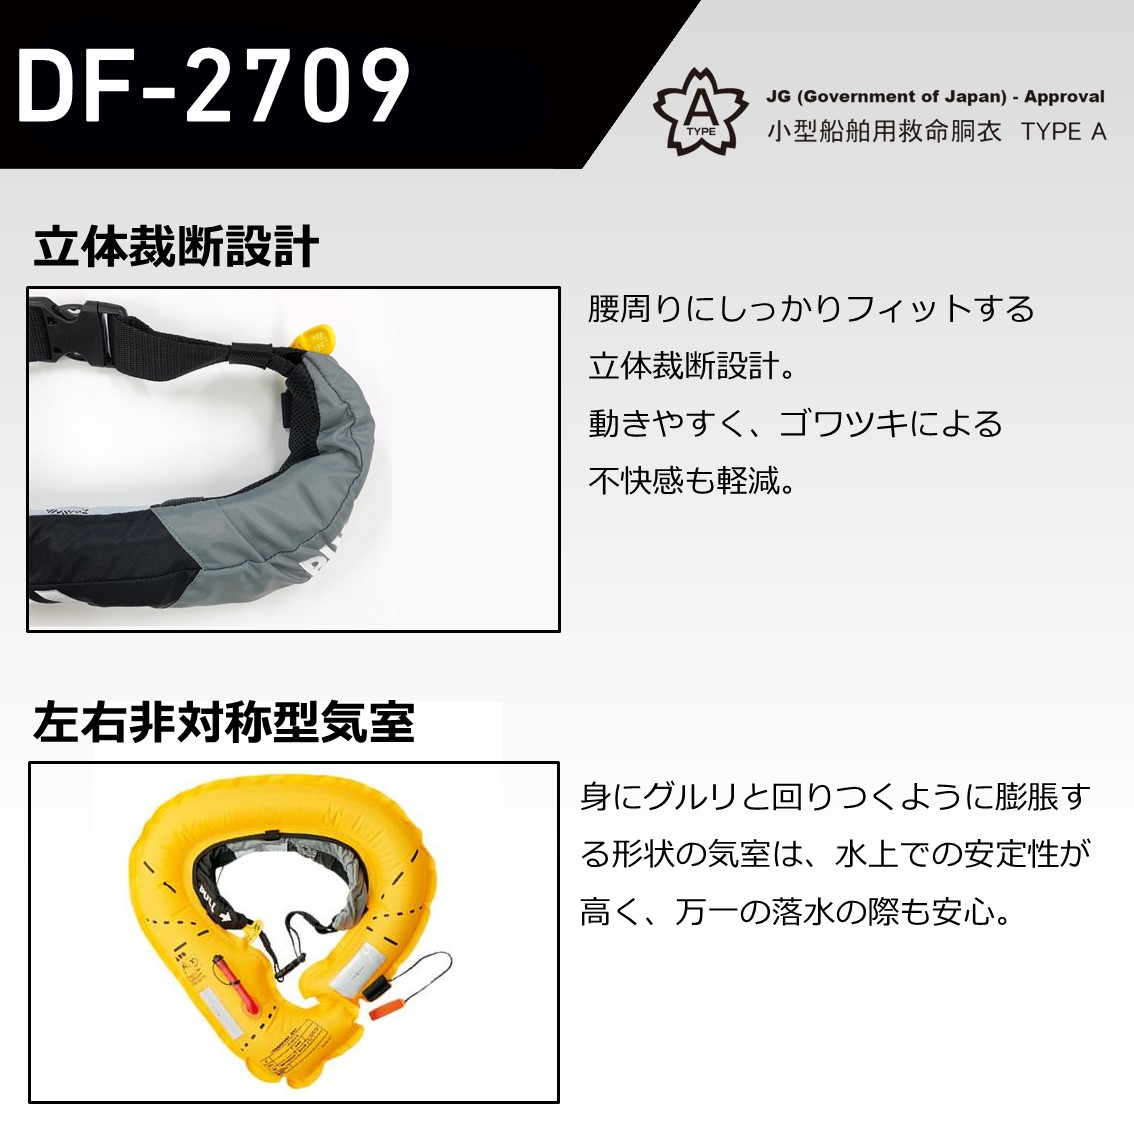 ダイワ インフレータブルライフジャケット ウエストタイプ自動・手動膨脹式 DF-2709 (桜マーク 国土交通省認定) -  釣り具の販売、通販なら、フィッシング遊-WEB本店 ダイワ／シマノ／がまかつの釣具ならおまかせ